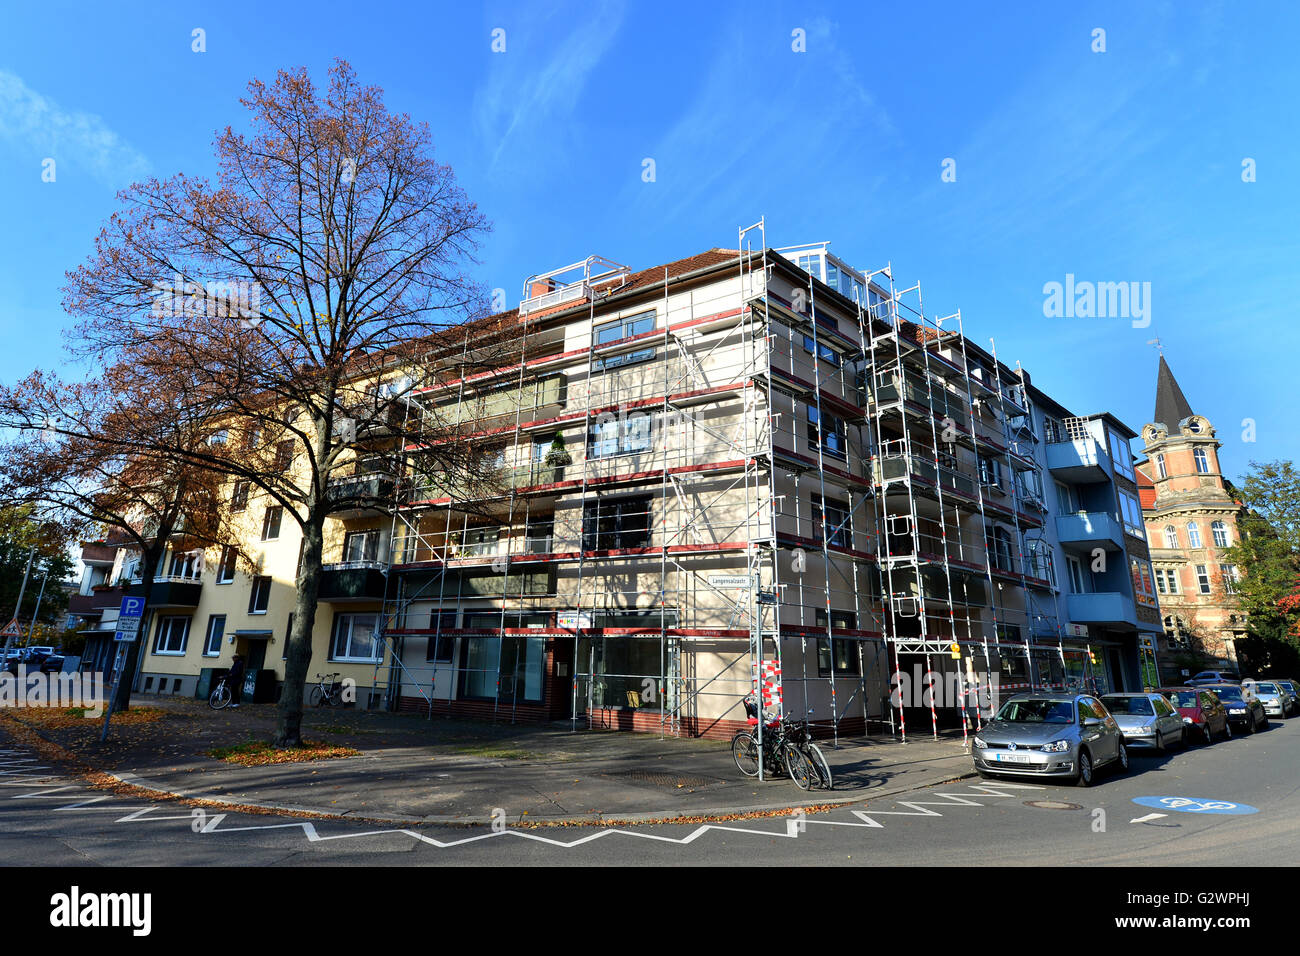 04.01.2016, Hannover, Niedersachsen, Deutschland - Eingeruestetes-Apartment-Gebäude in Hannover. 0HD160104D015CAROEX. JPG - nicht für den Verkauf in G E R M A N Y, A U S T R I A S W I T Z E R L A N D [MODEL-RELEASE: Nein, PROPERTY-RELEASE: Nein, (C) Caro Fotoagentur / Dittrich, http://www.caro-images.com, info@carofoto.pl - jegliche Nutzung dieses Bildes unterliegt GEMA!] Stockfoto